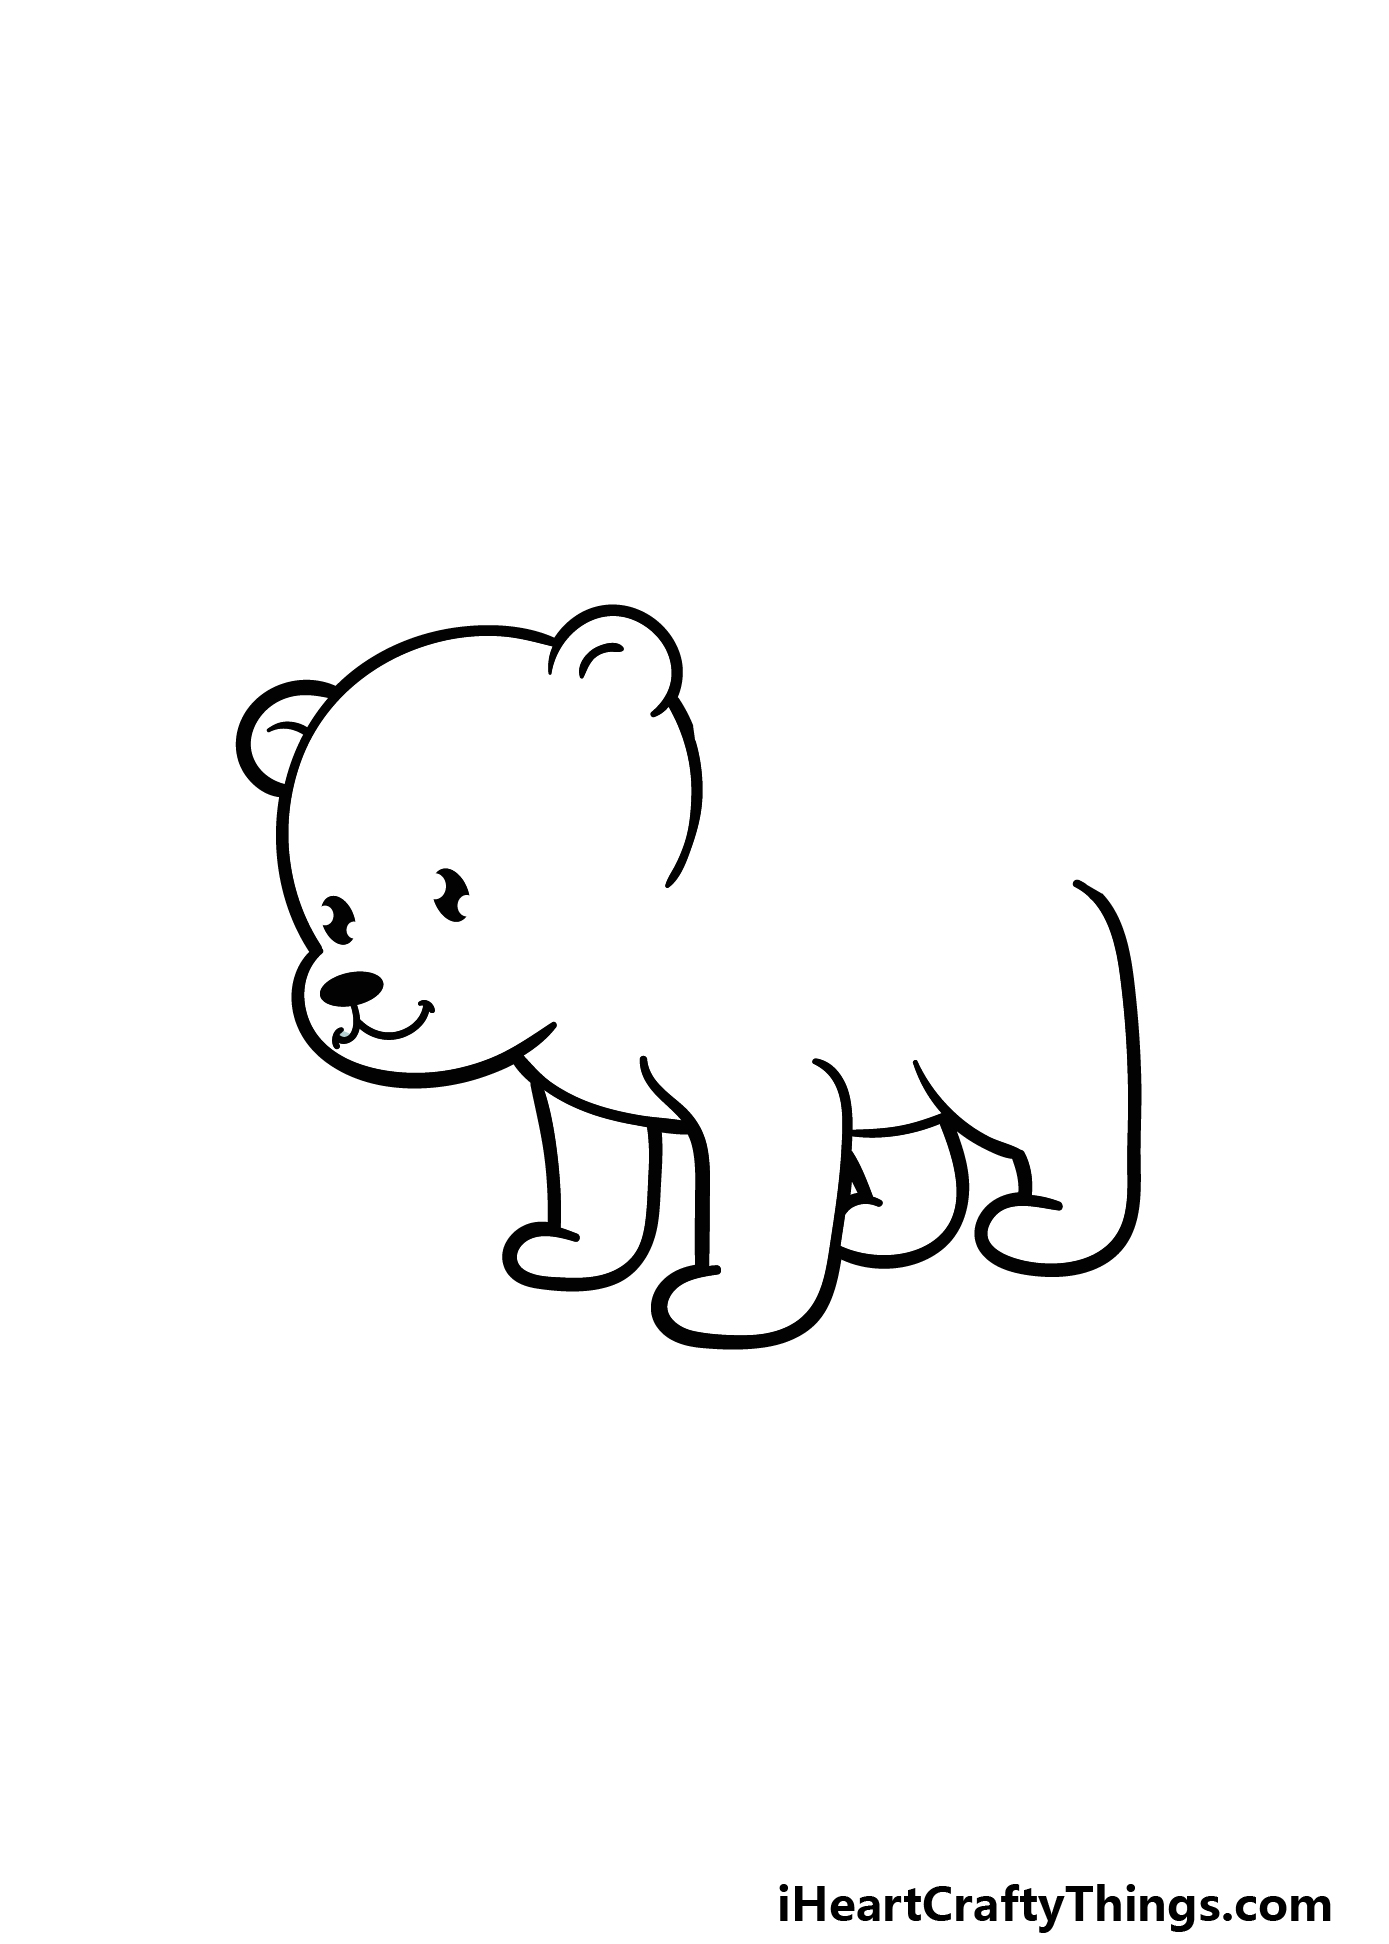 Cartoon Polar Bear Drawing - How To Draw A Cartoon Polar Bear Step By Step